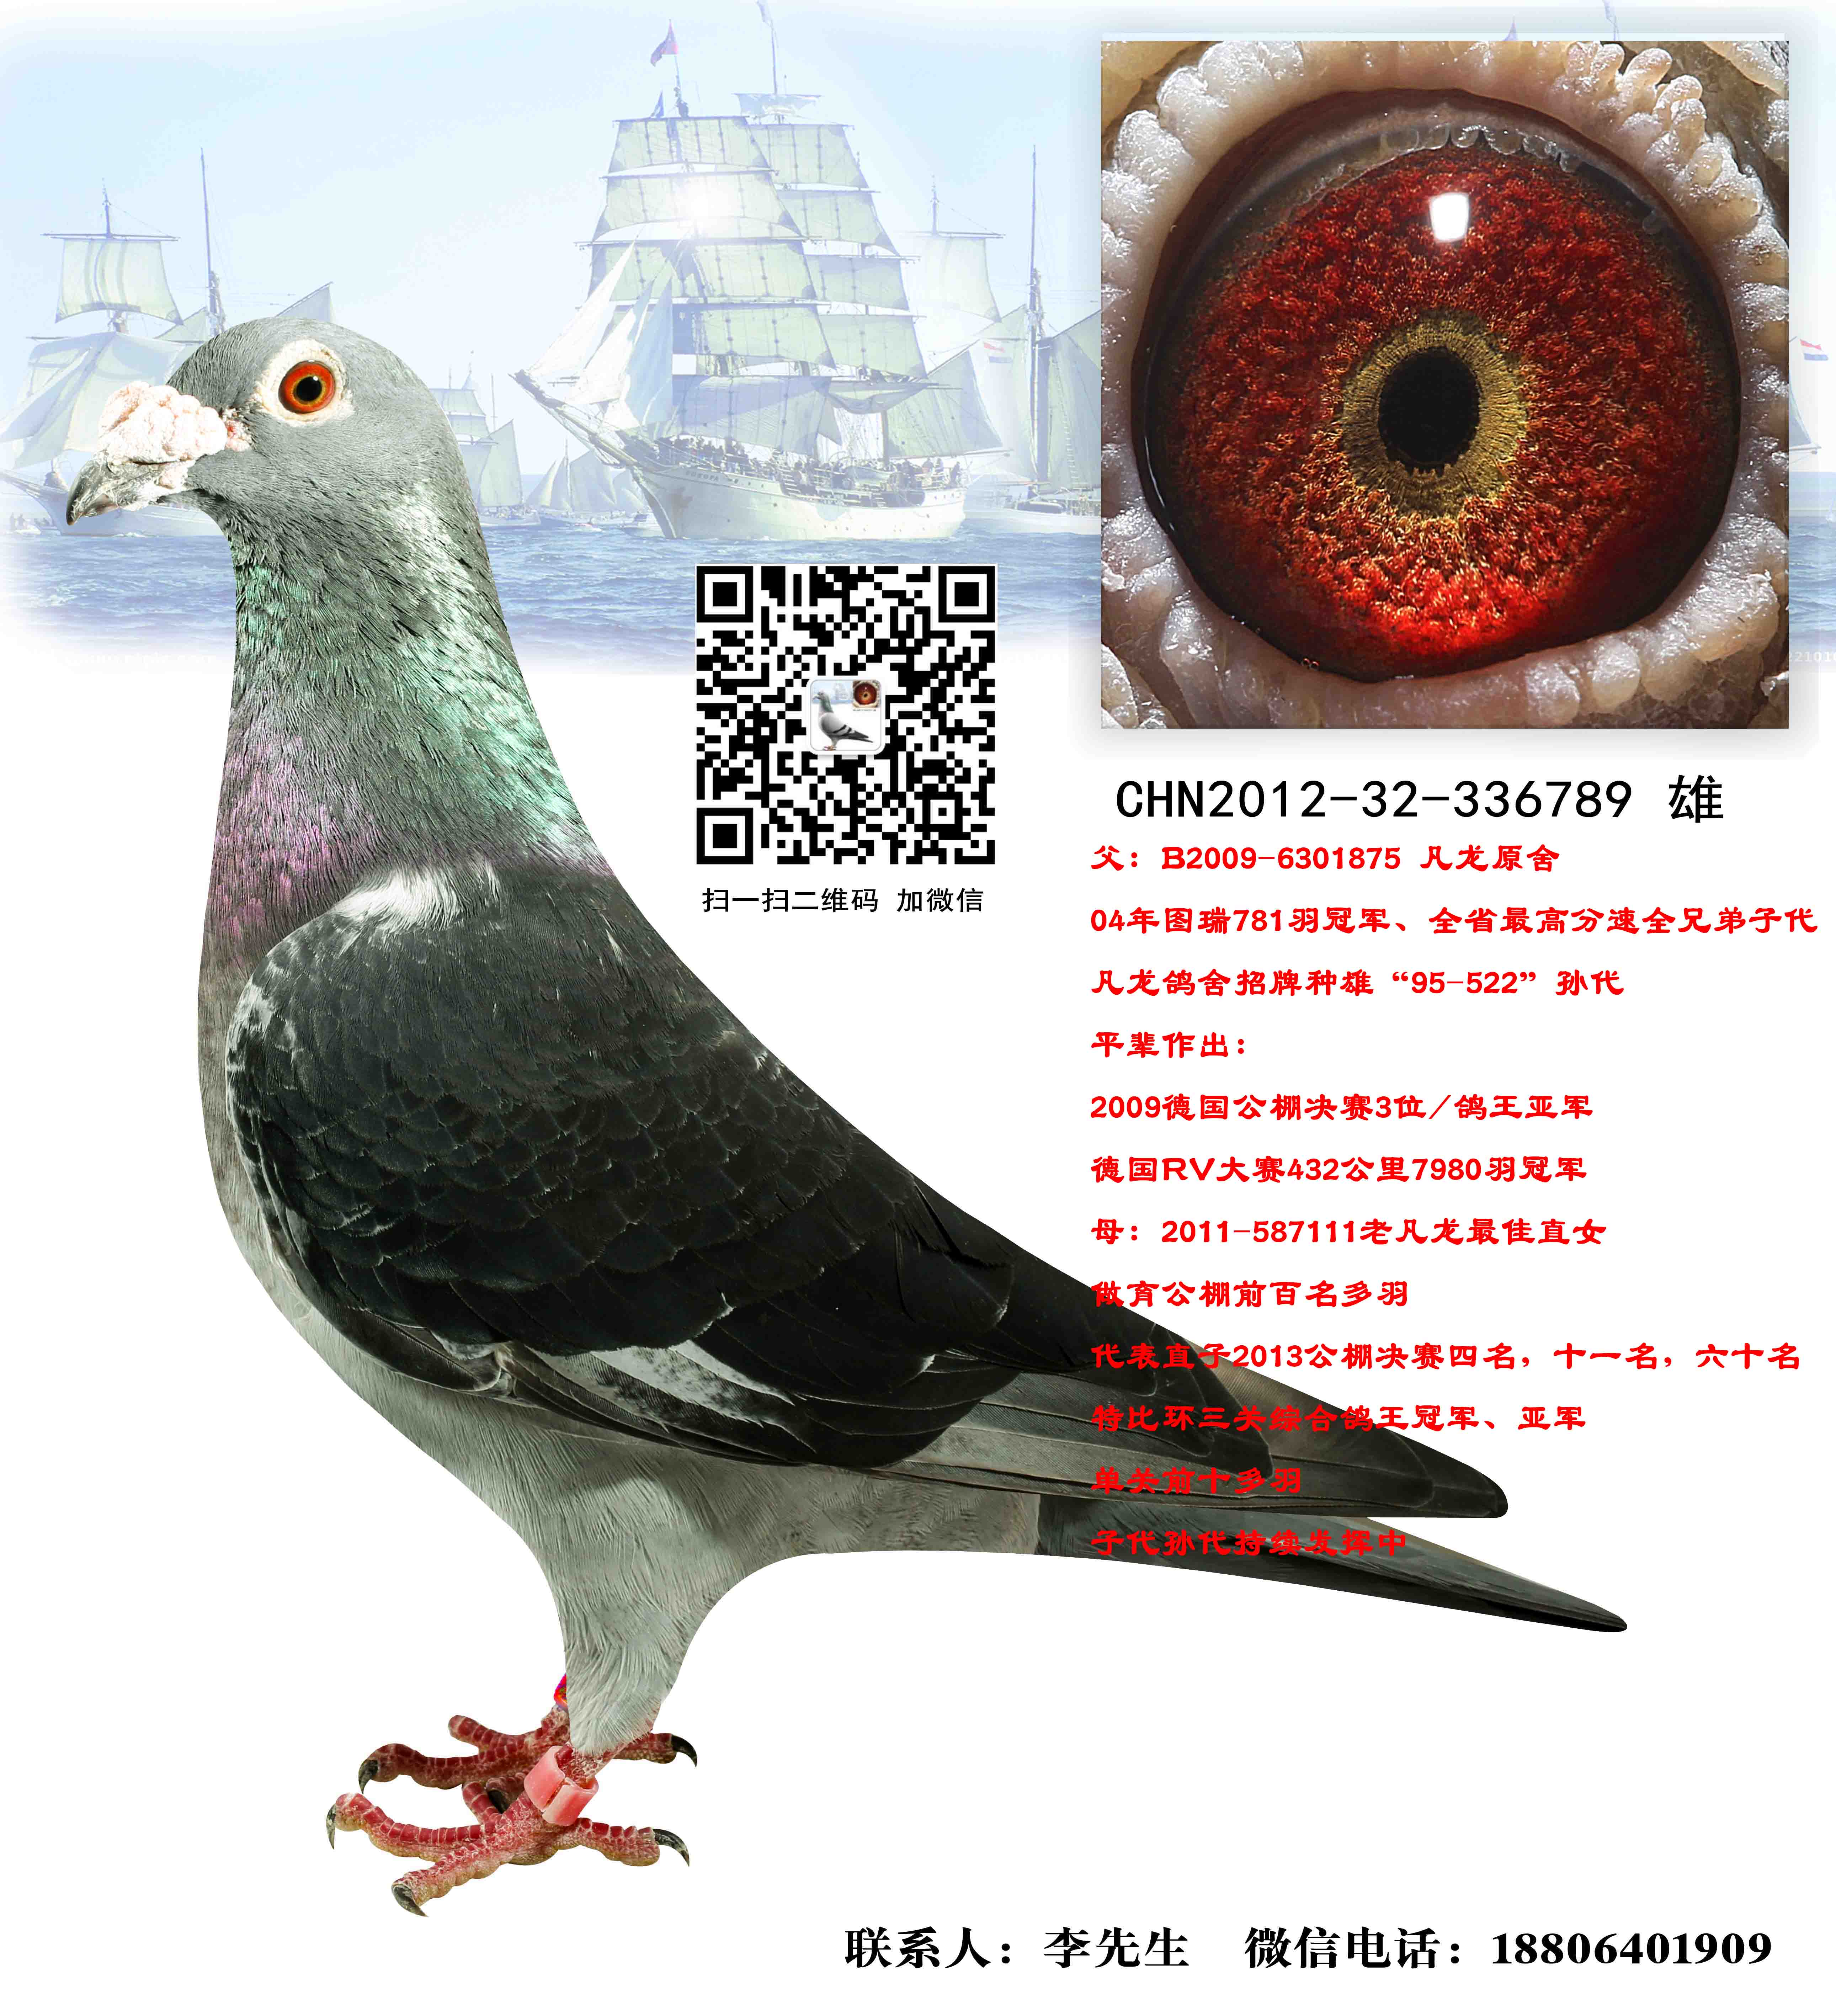 凡龙_中国远洋鸽业-中信网爱鸽商城